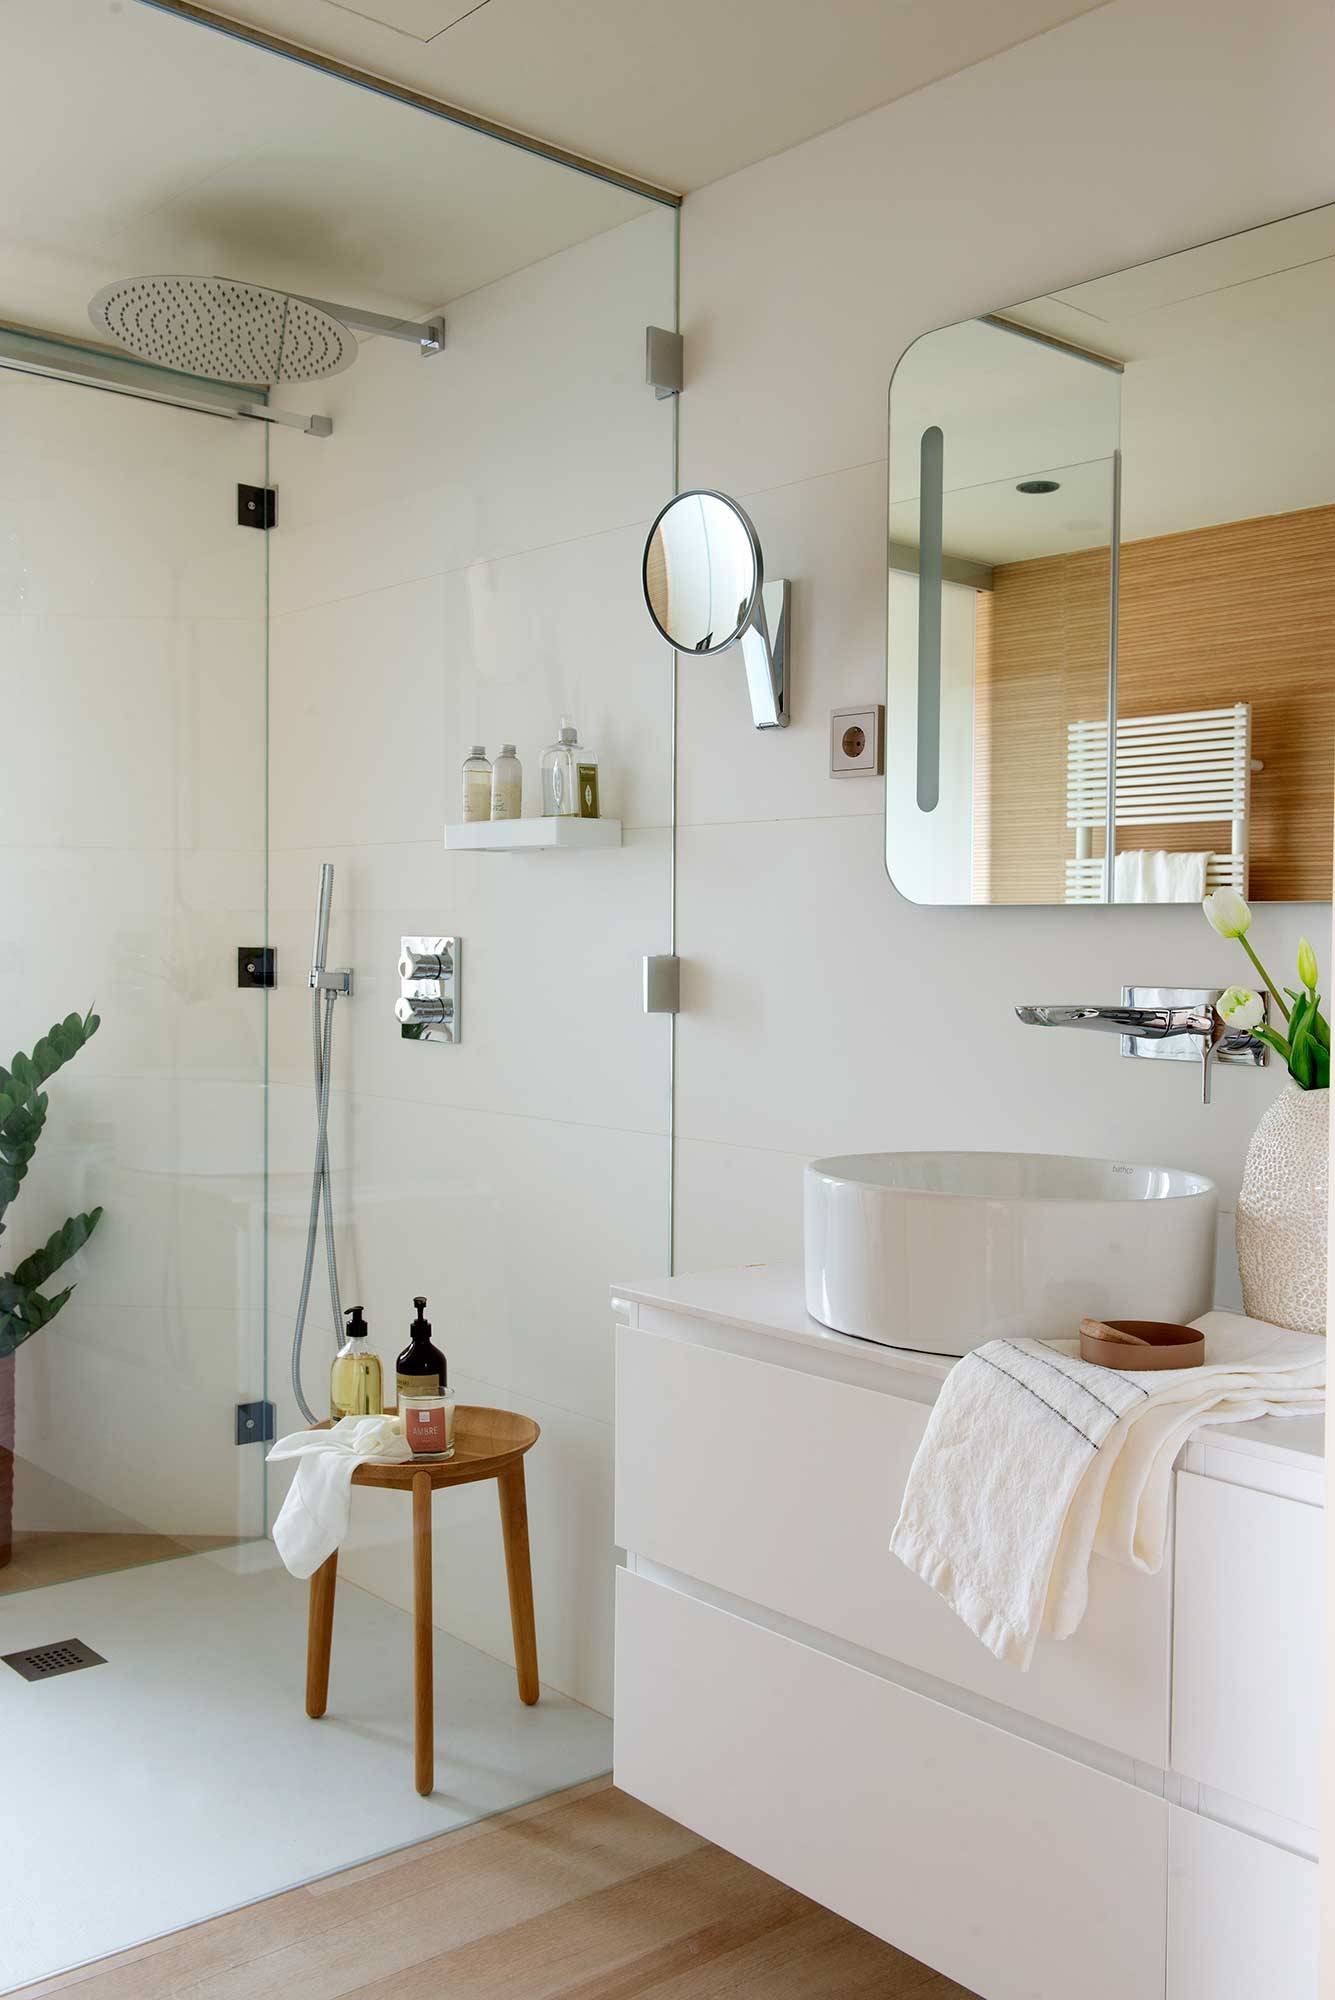 Baño blanco con cabina de ducha transparente.